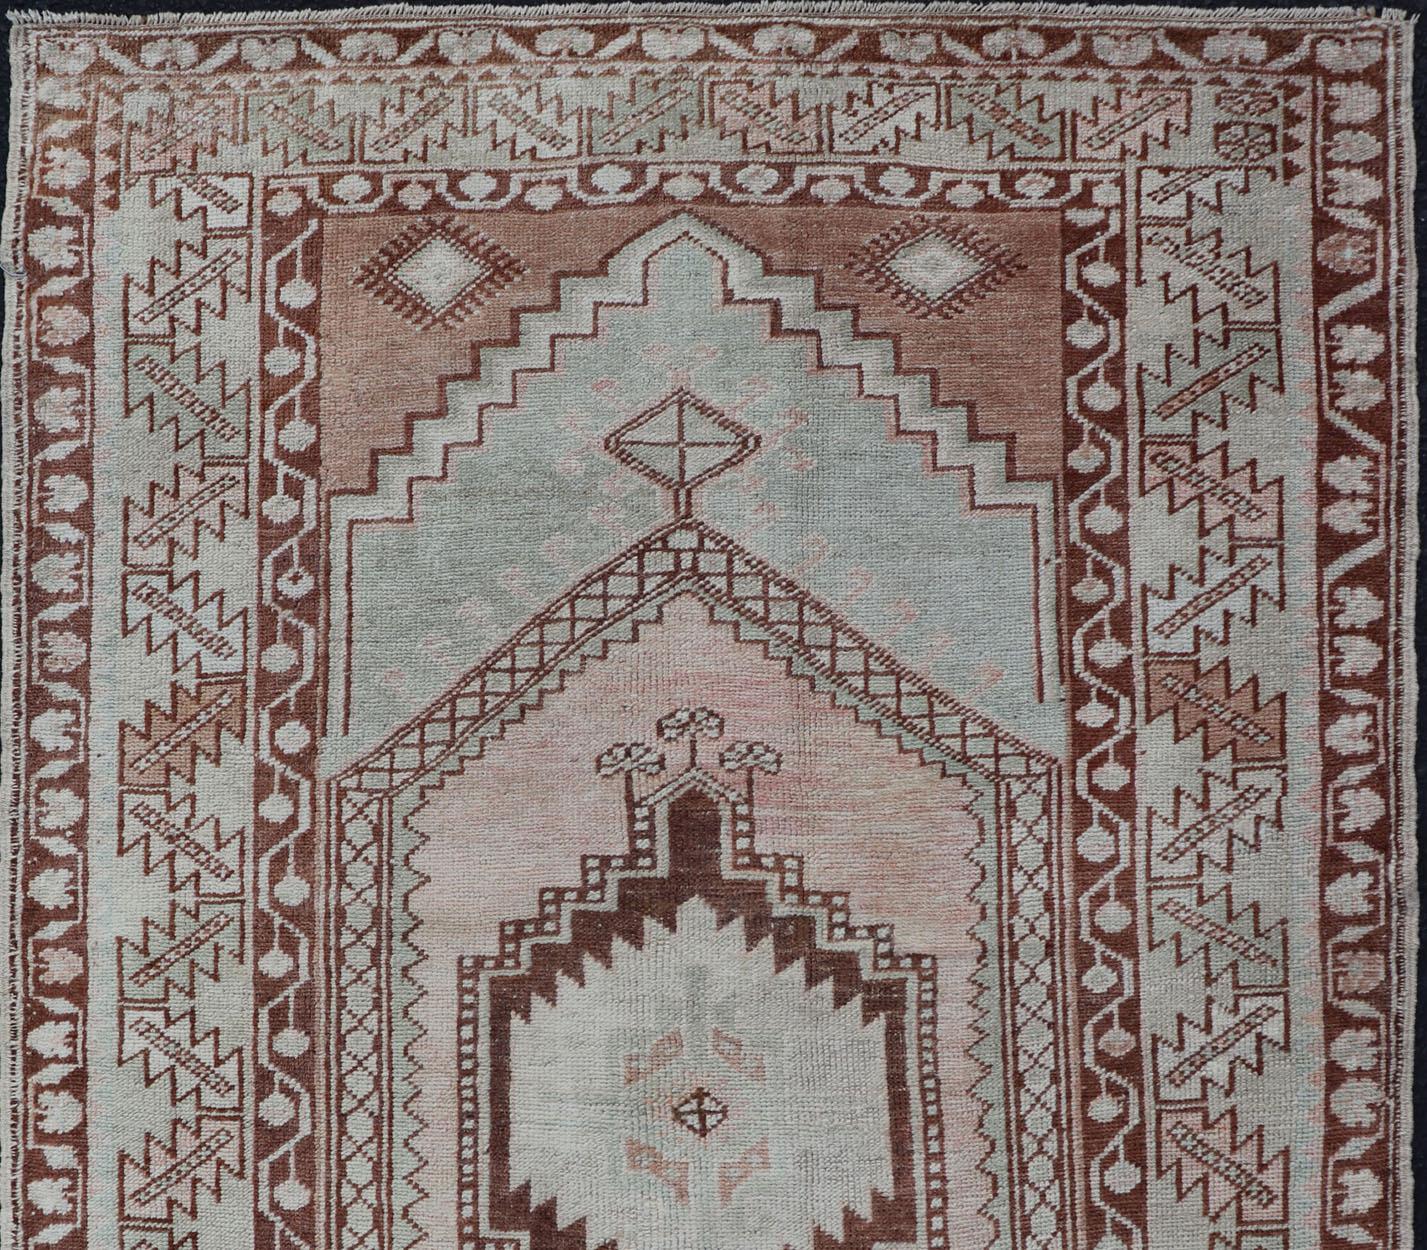 Tapis Oushak turc ancien aux couleurs sourdes avec un motif traditionnel de médaillon floral, tapis EN-178029, pays d'origine / type : Turquie / Oushak, circa 1940

Ce saisissant tapis turc Oushak arbore un bleu clair, ainsi qu'un corps brun, roux